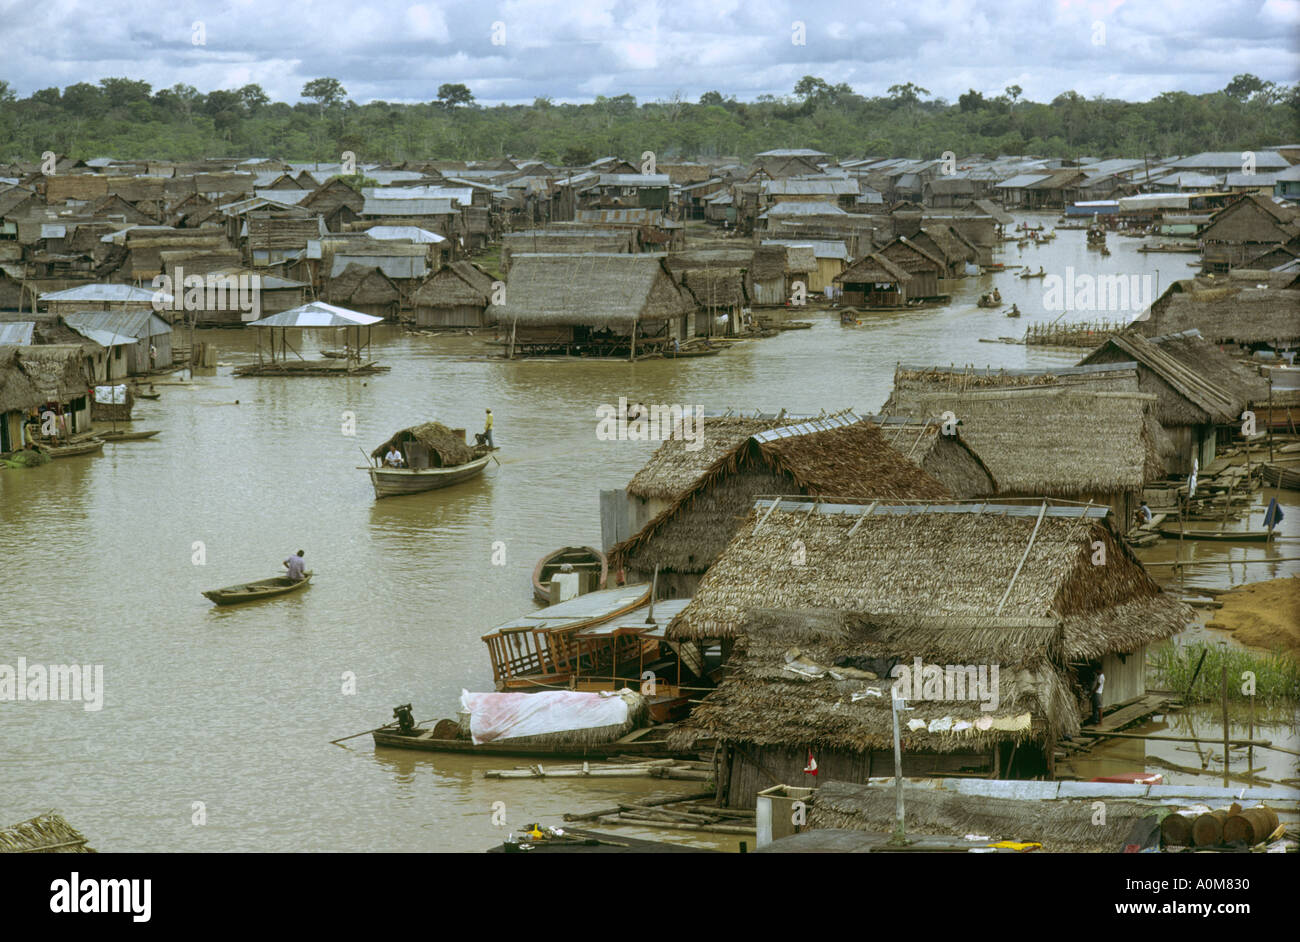 Peru1970 schwimmende Stadt Belen Iquitos Amazonas Fluss Loreto Abteilung  bestehend aus Holz und Palmen Endivie Hütten auf Stelzen und Flöße  Stockfotografie - Alamy